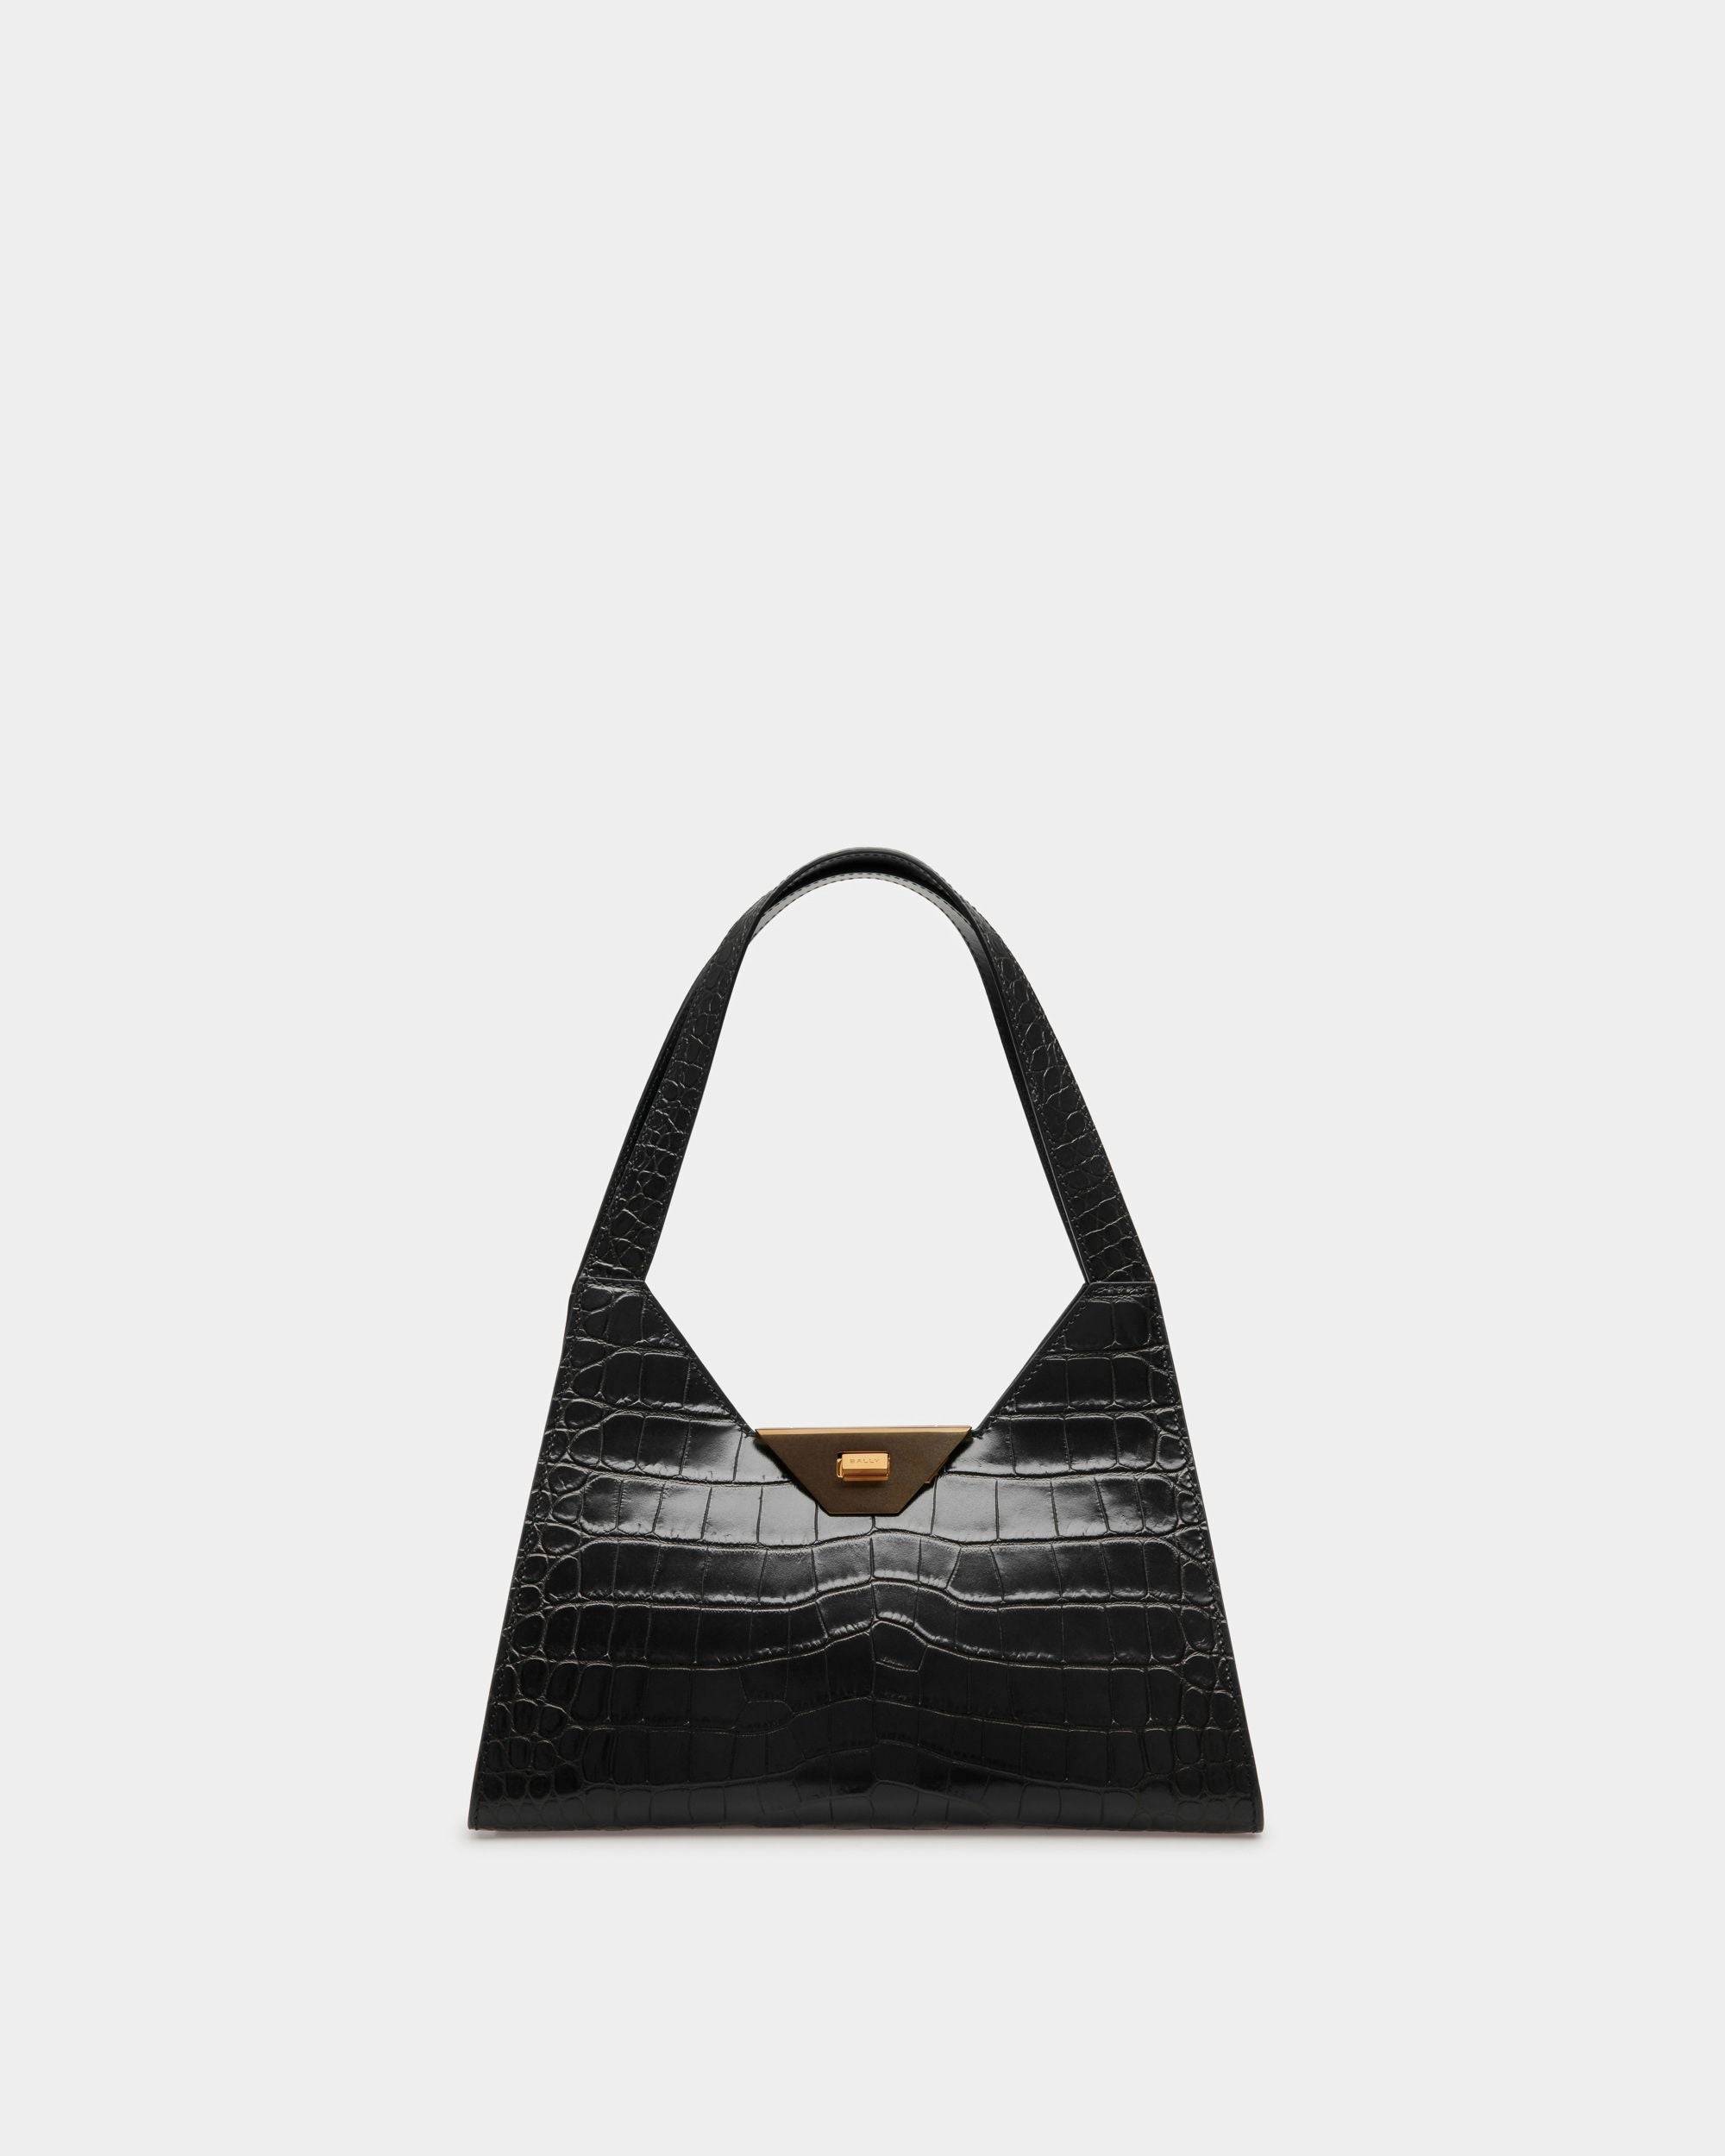 Trilliant Shoulder Bag | Women's Shoulder Bag | Black Leather | Bally | Still Life Front